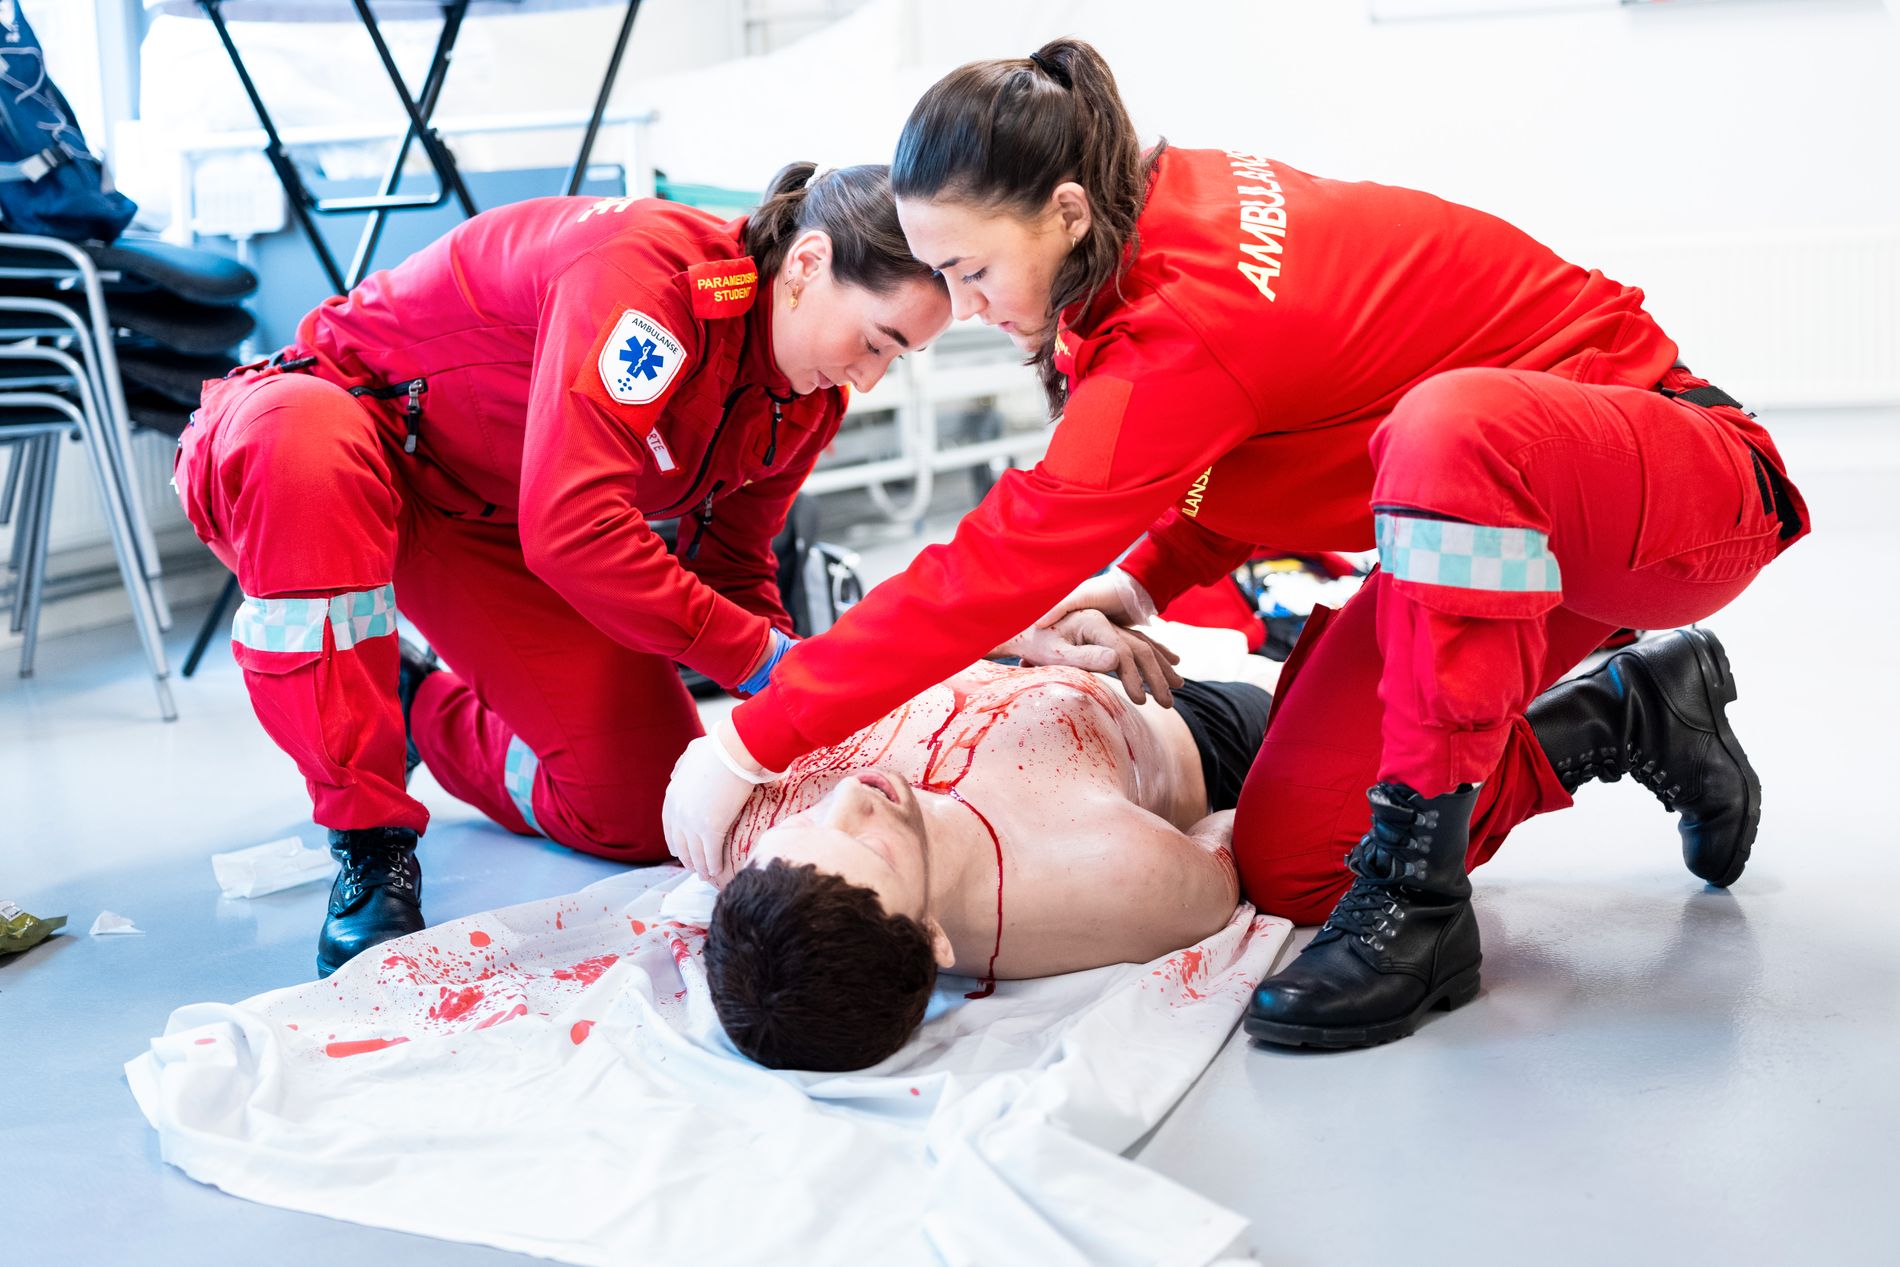 Paramedisin-studentene har ferdighetstrening omtrent en gang i uka. Her hjelper Fjellestad og Bender et case som har blitt knivstukket og har pågående blødninger.